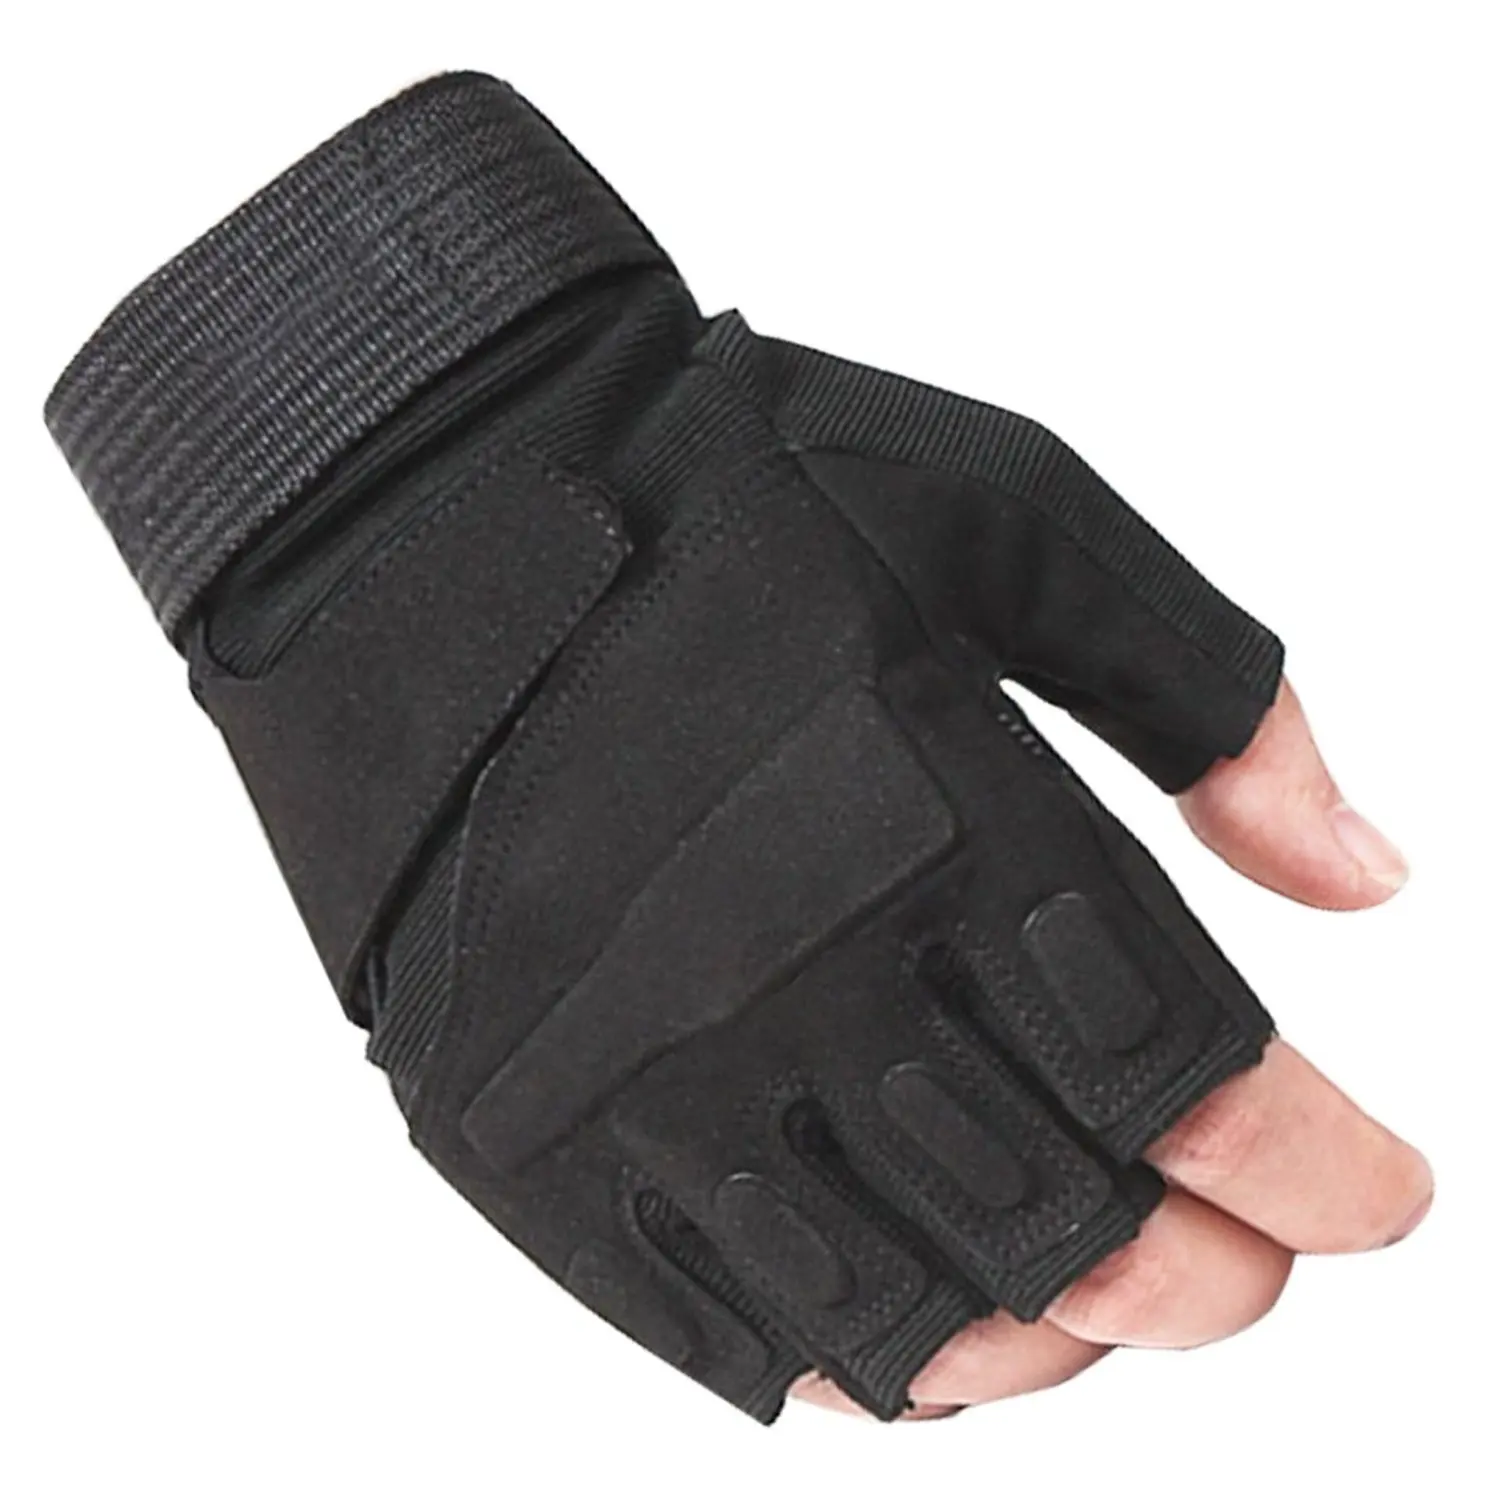 athletic fingerless gloves